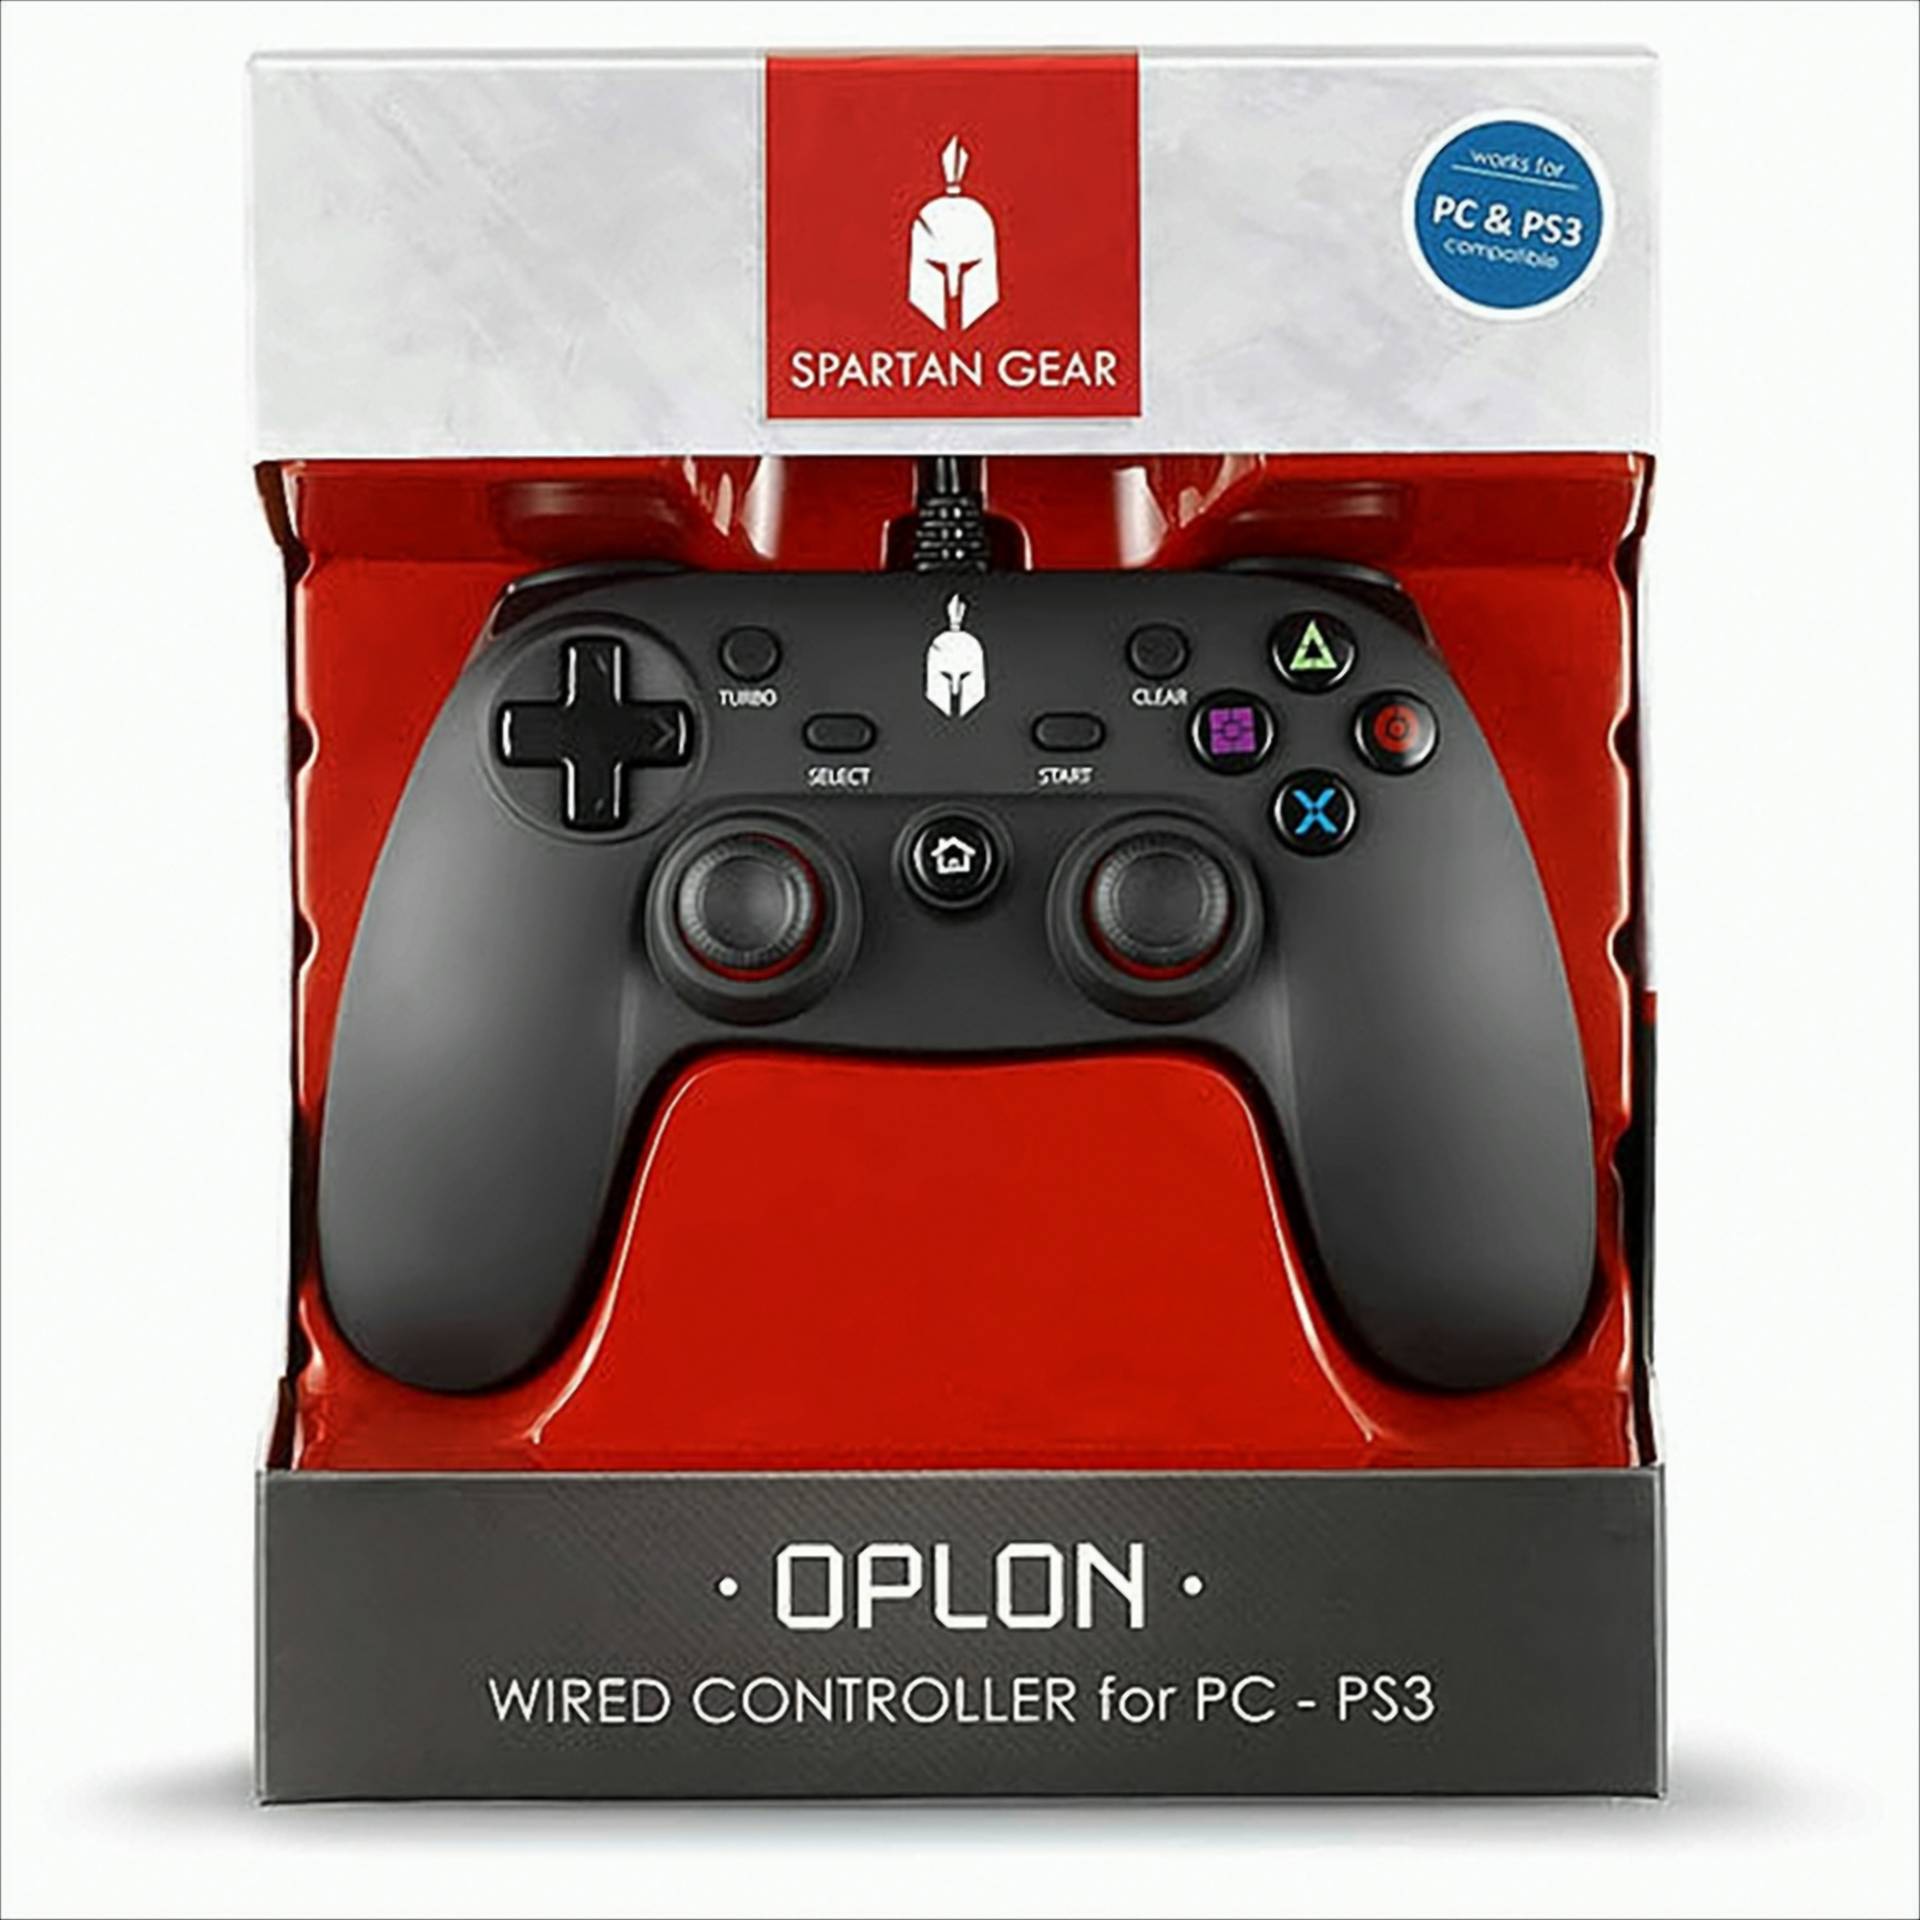 PS3 Controller Spartan Gear Oplon wired black PC compatible von Diverse